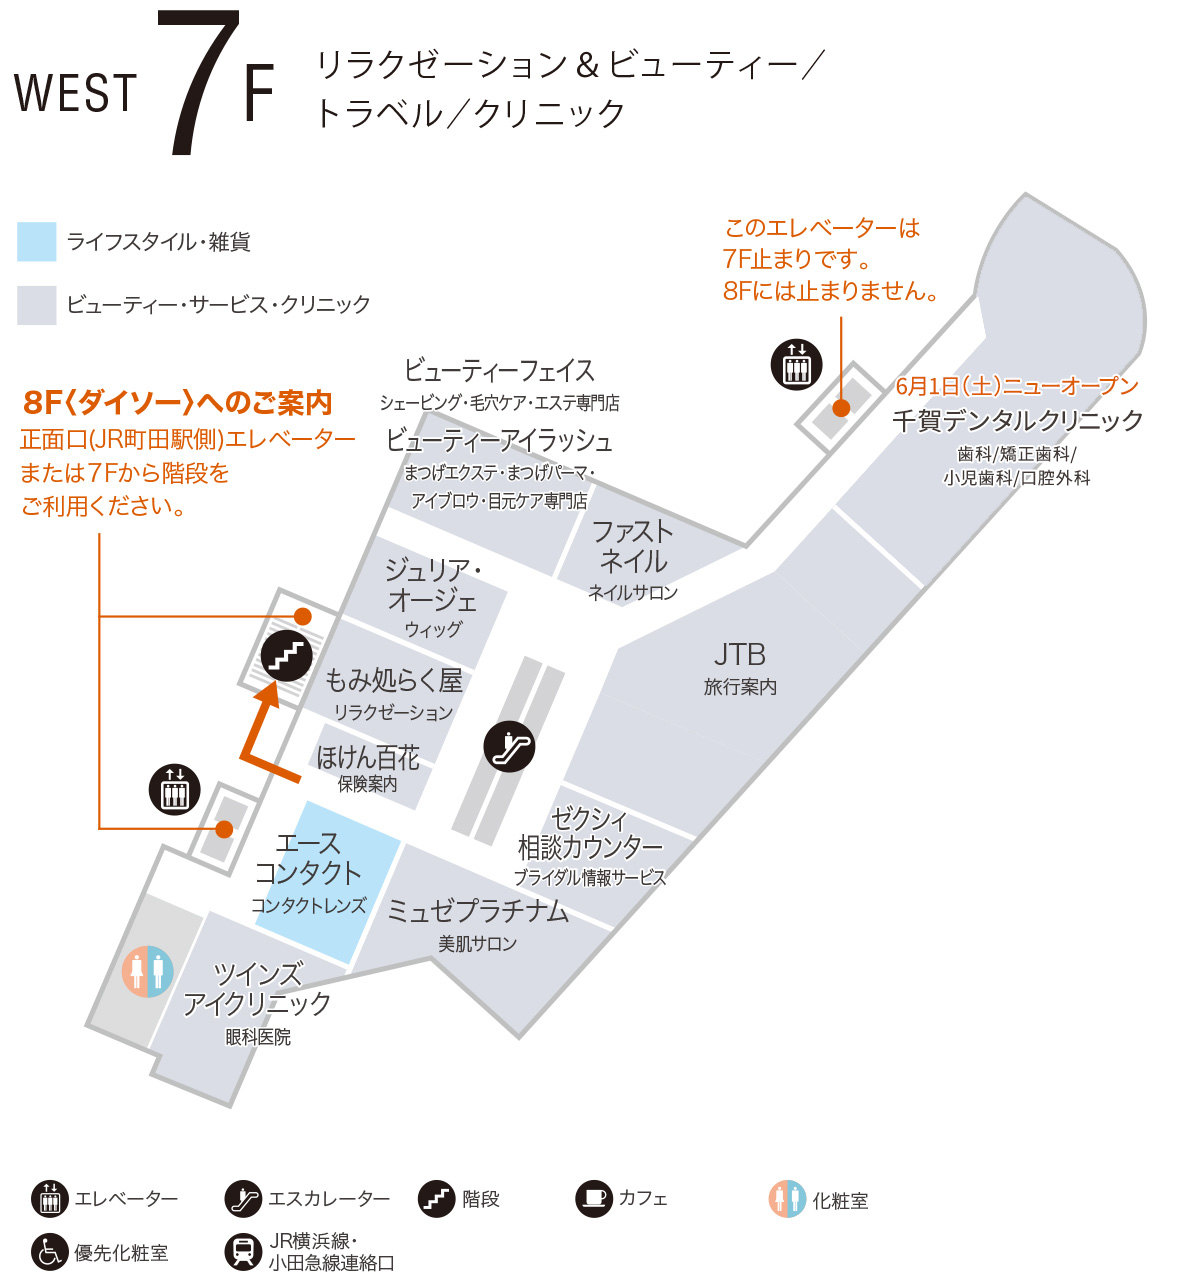 ウエスト 7f ショップ フロアガイド 町田東急ツインズ公式ホームページ